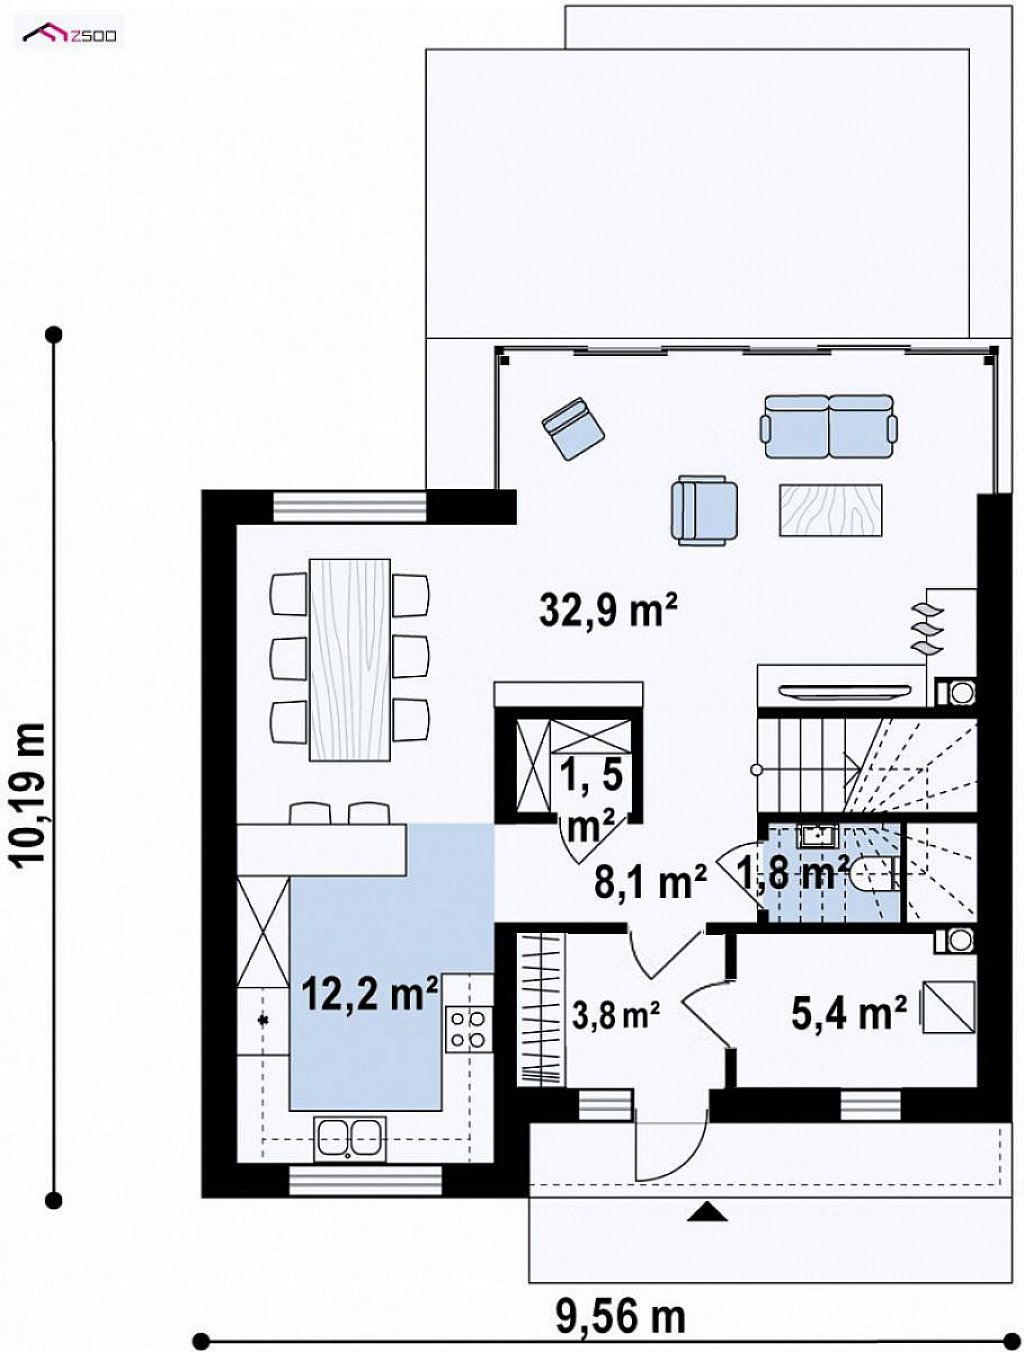 Первый этаж 65,8 м² дома Zx90